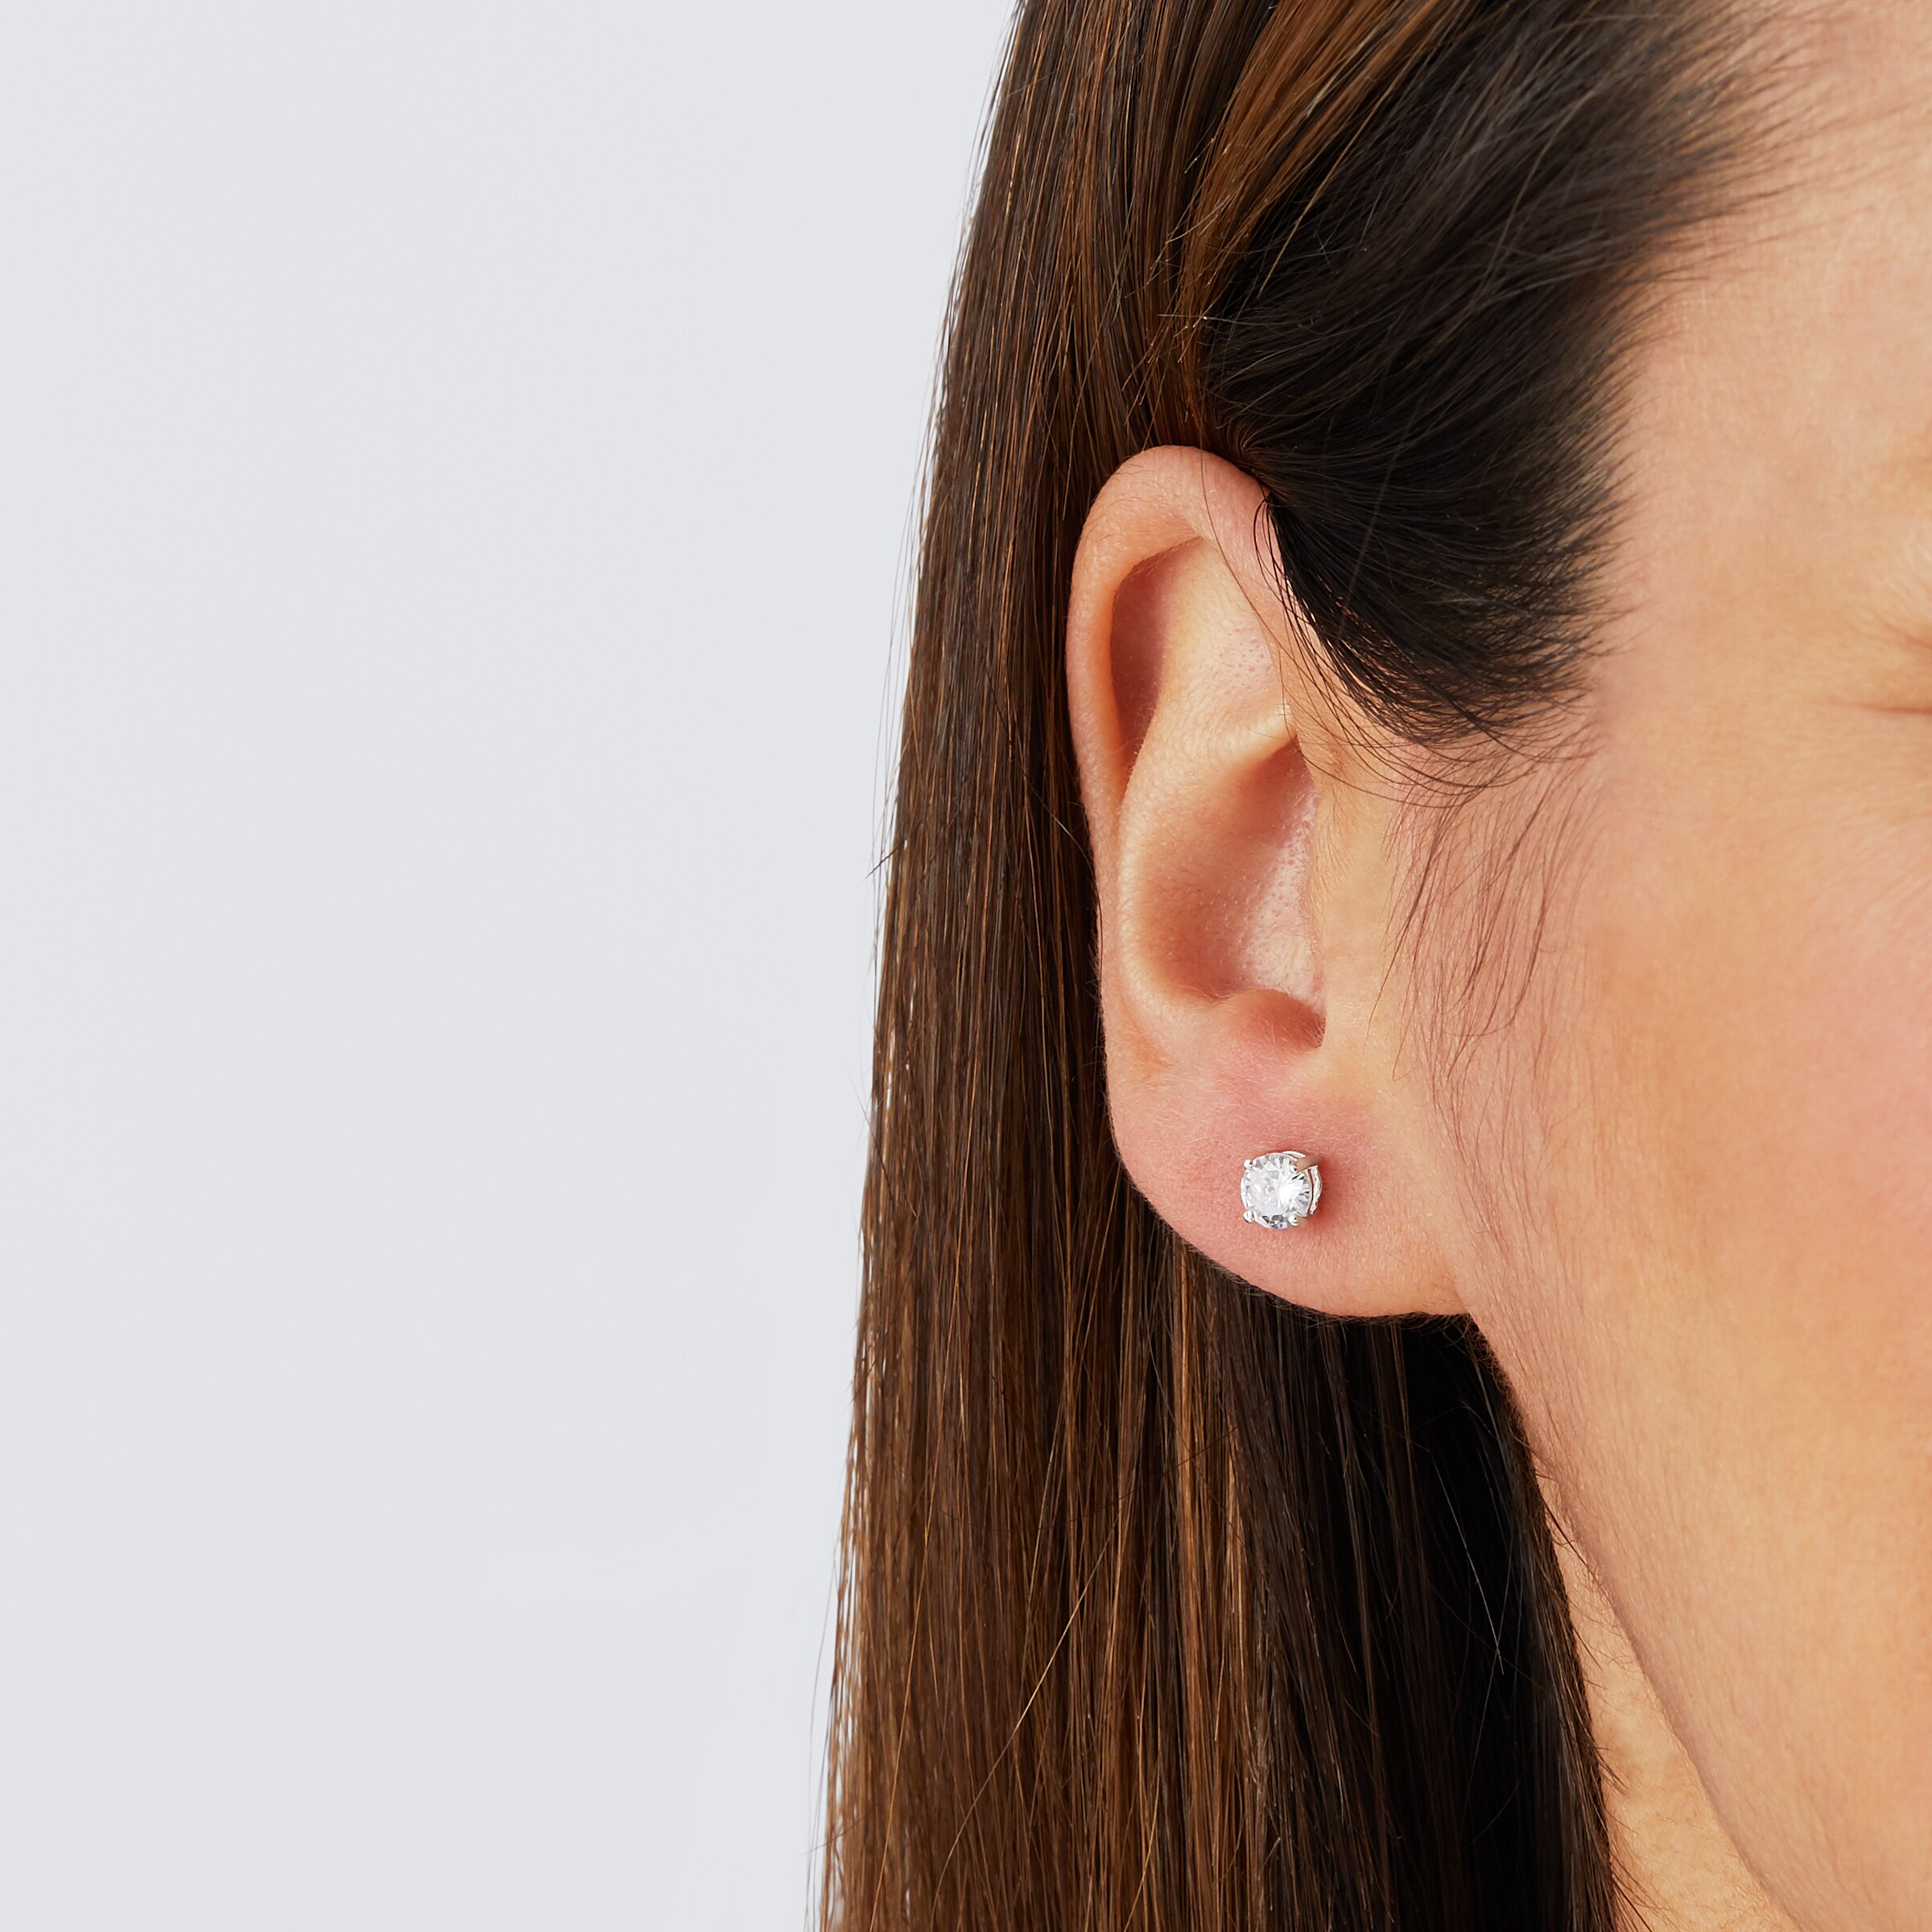 Pink Stone Small Silver Stud | Classy Silver Ear Stud - Earrings, Jewellery  - FOLKWAYS